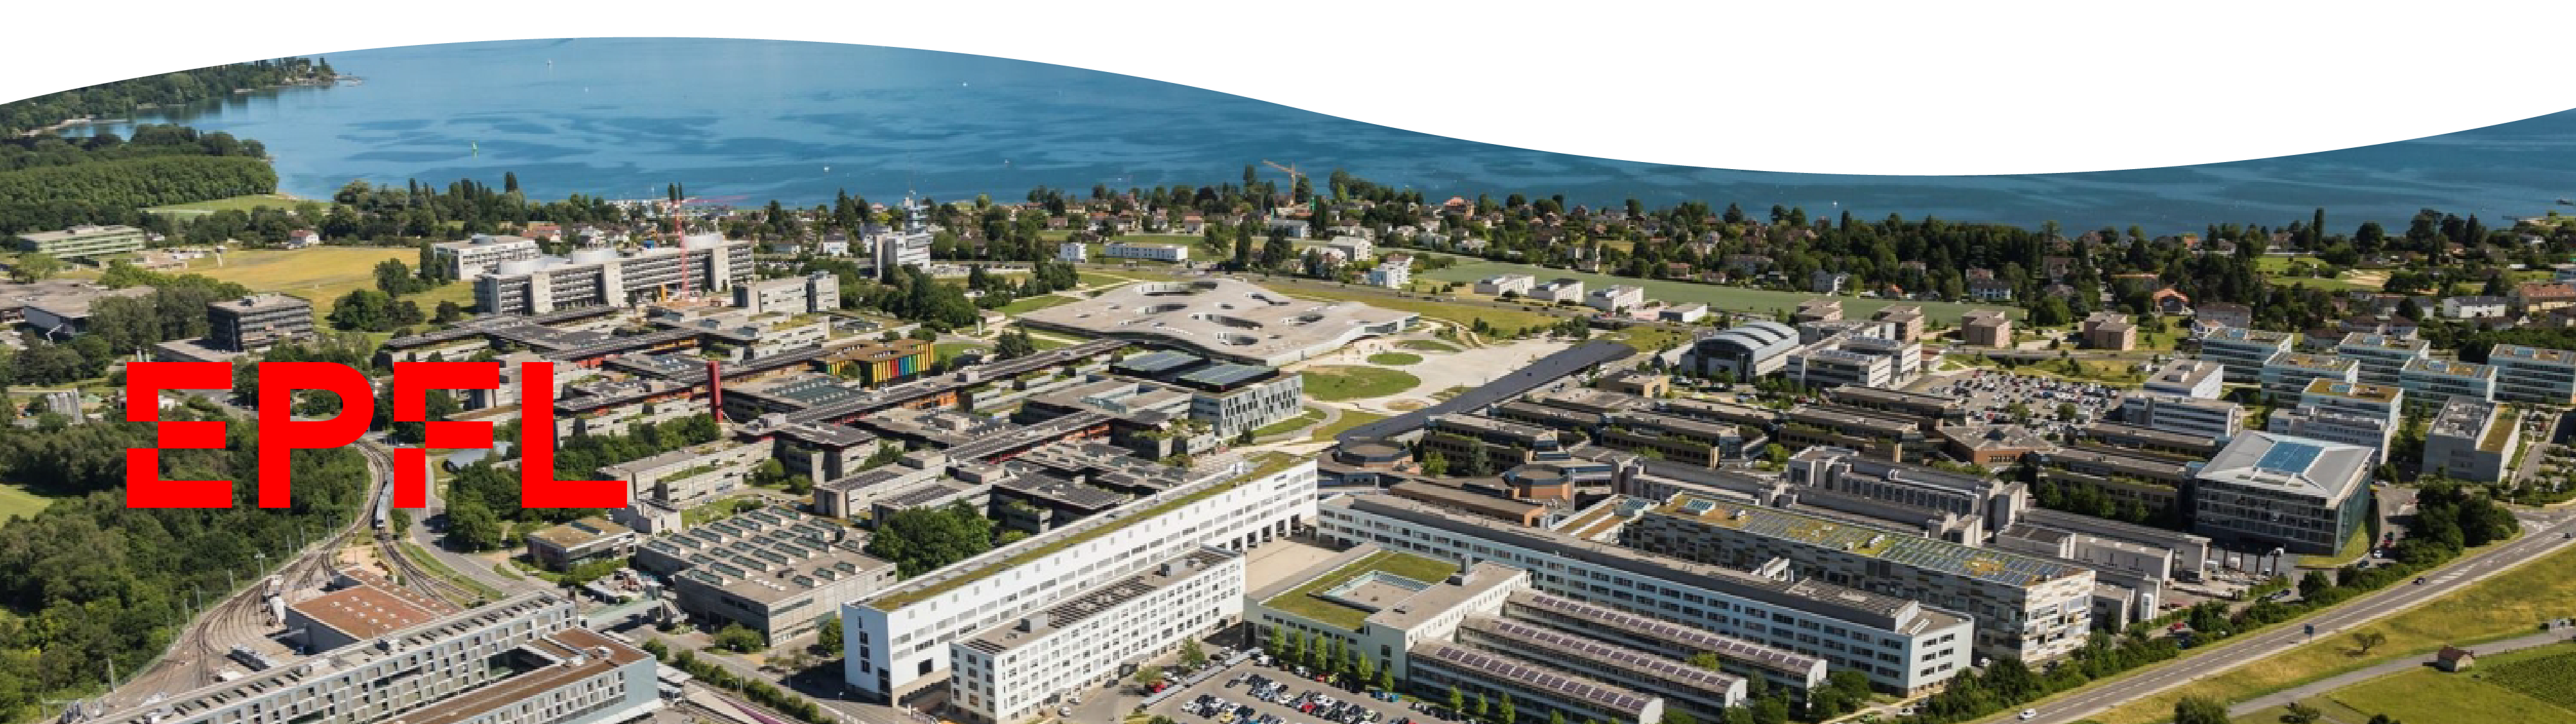 Bannière vue aérienne de l'EPFL avec logo